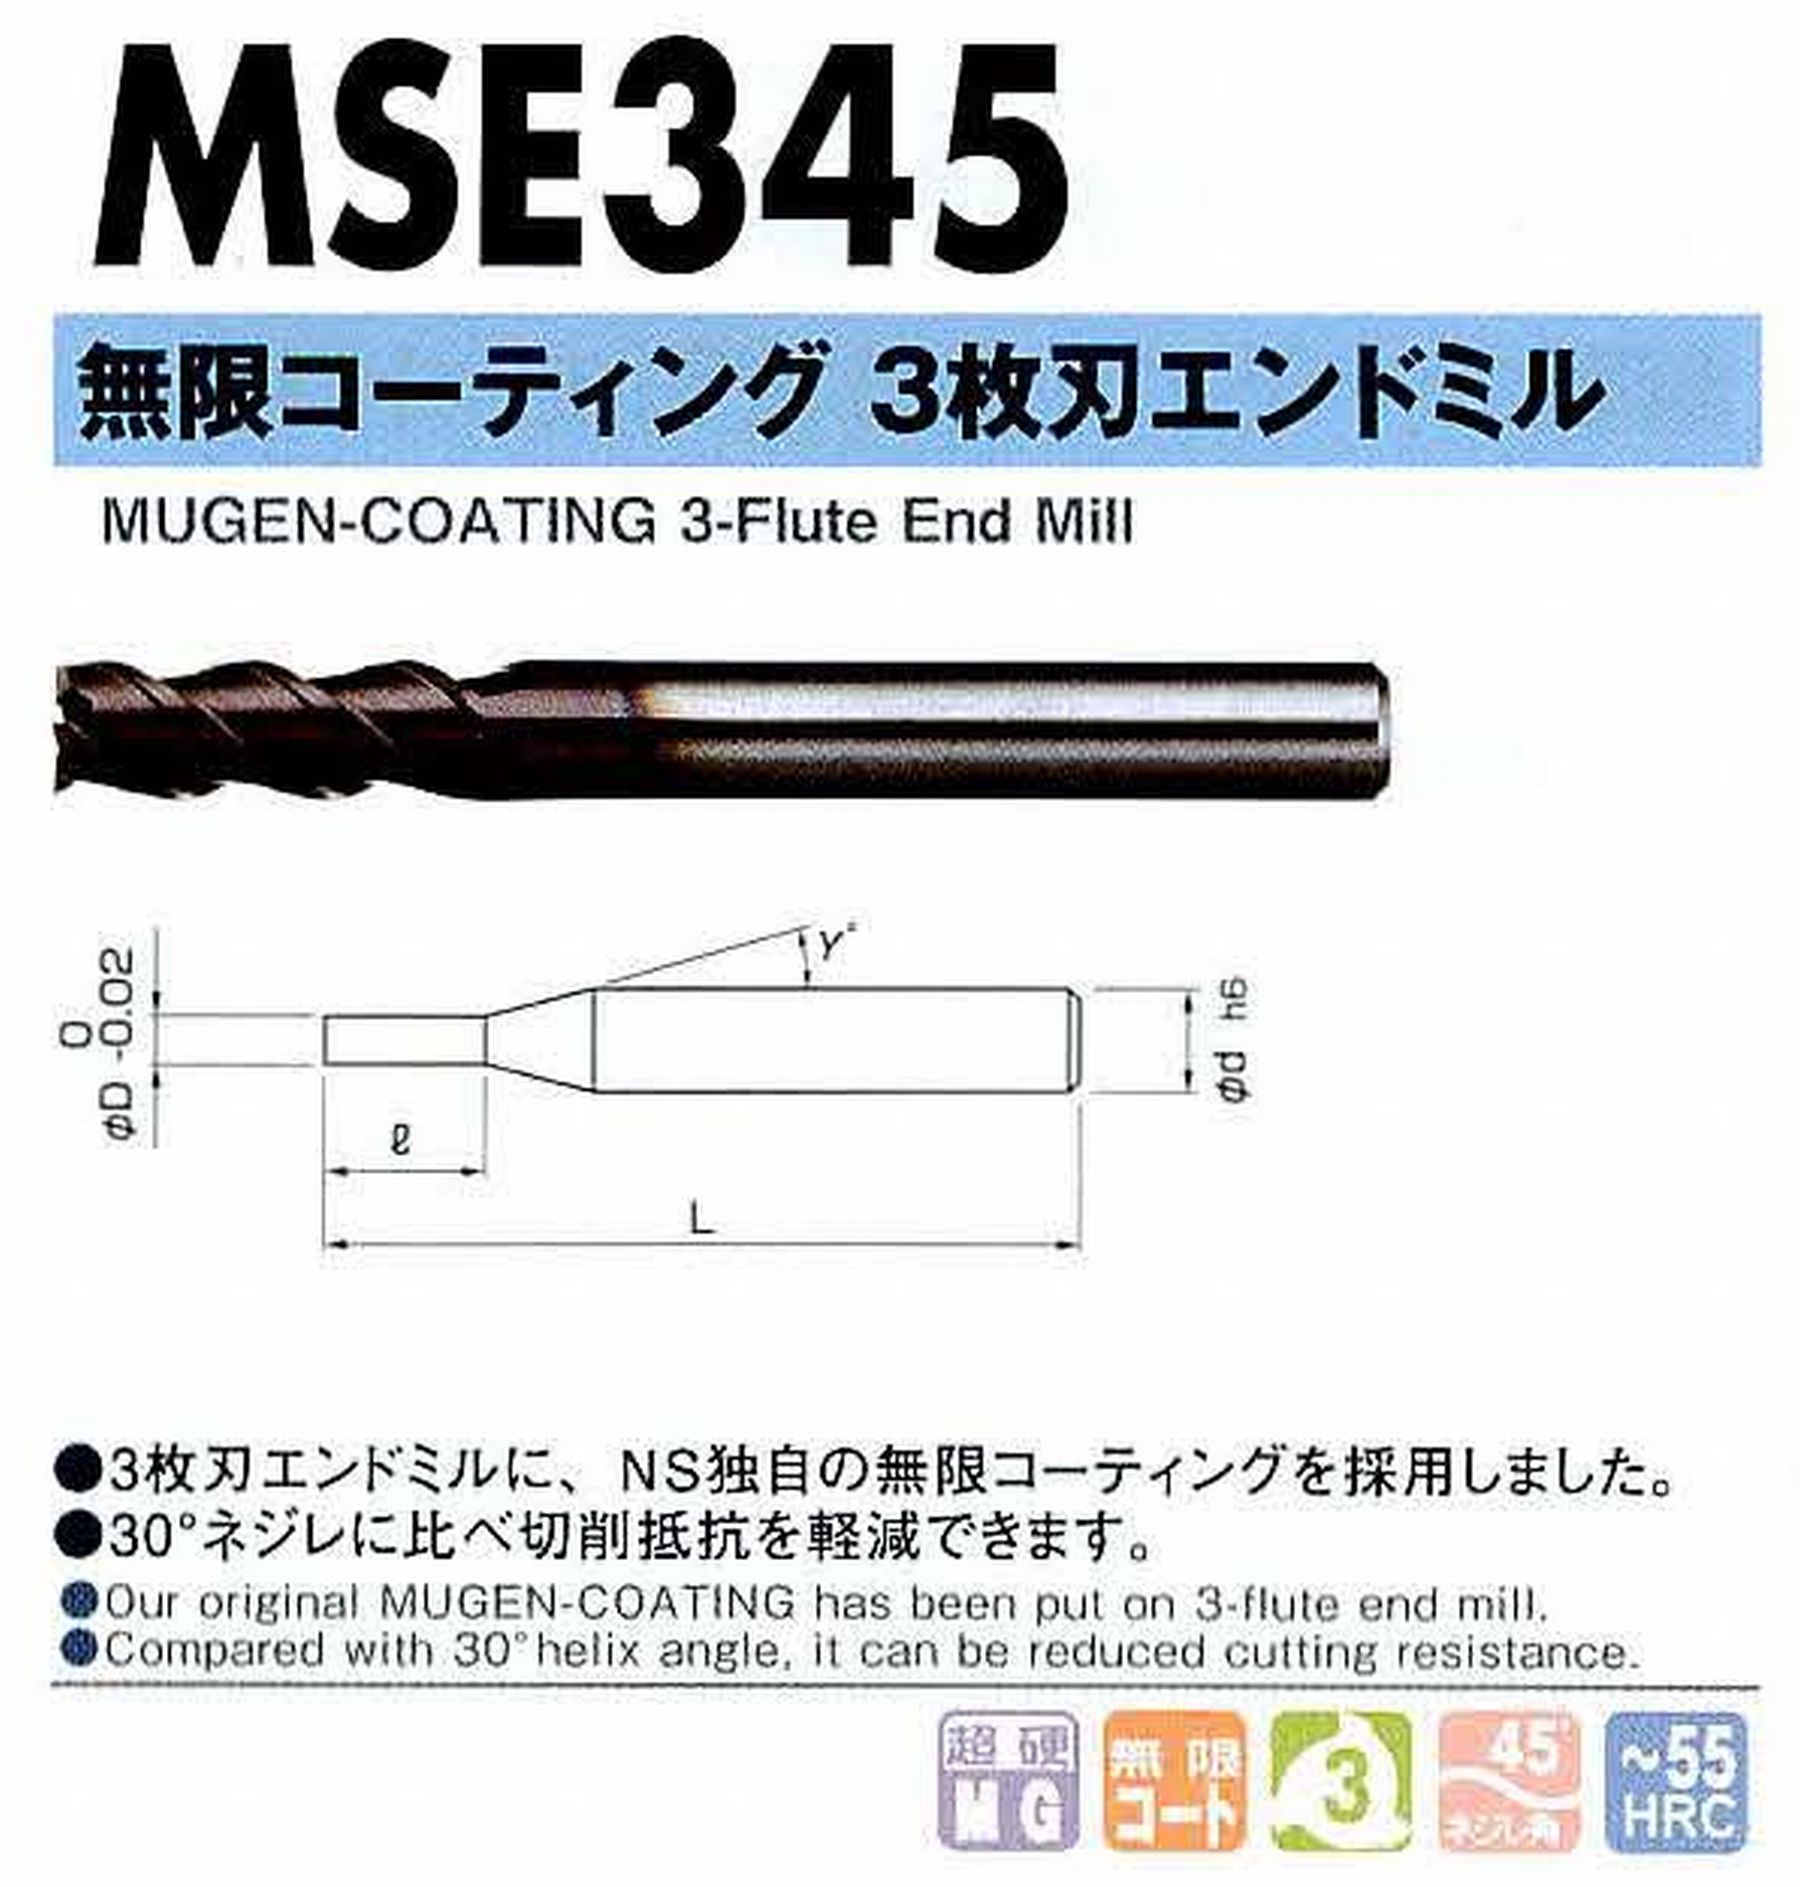 NS 日進工具 MSE345 無限コーティング3枚刃エンドミル コードNO．08-00130-00800 刃径8 刃長20 首角- シャンク径8mm 全長65